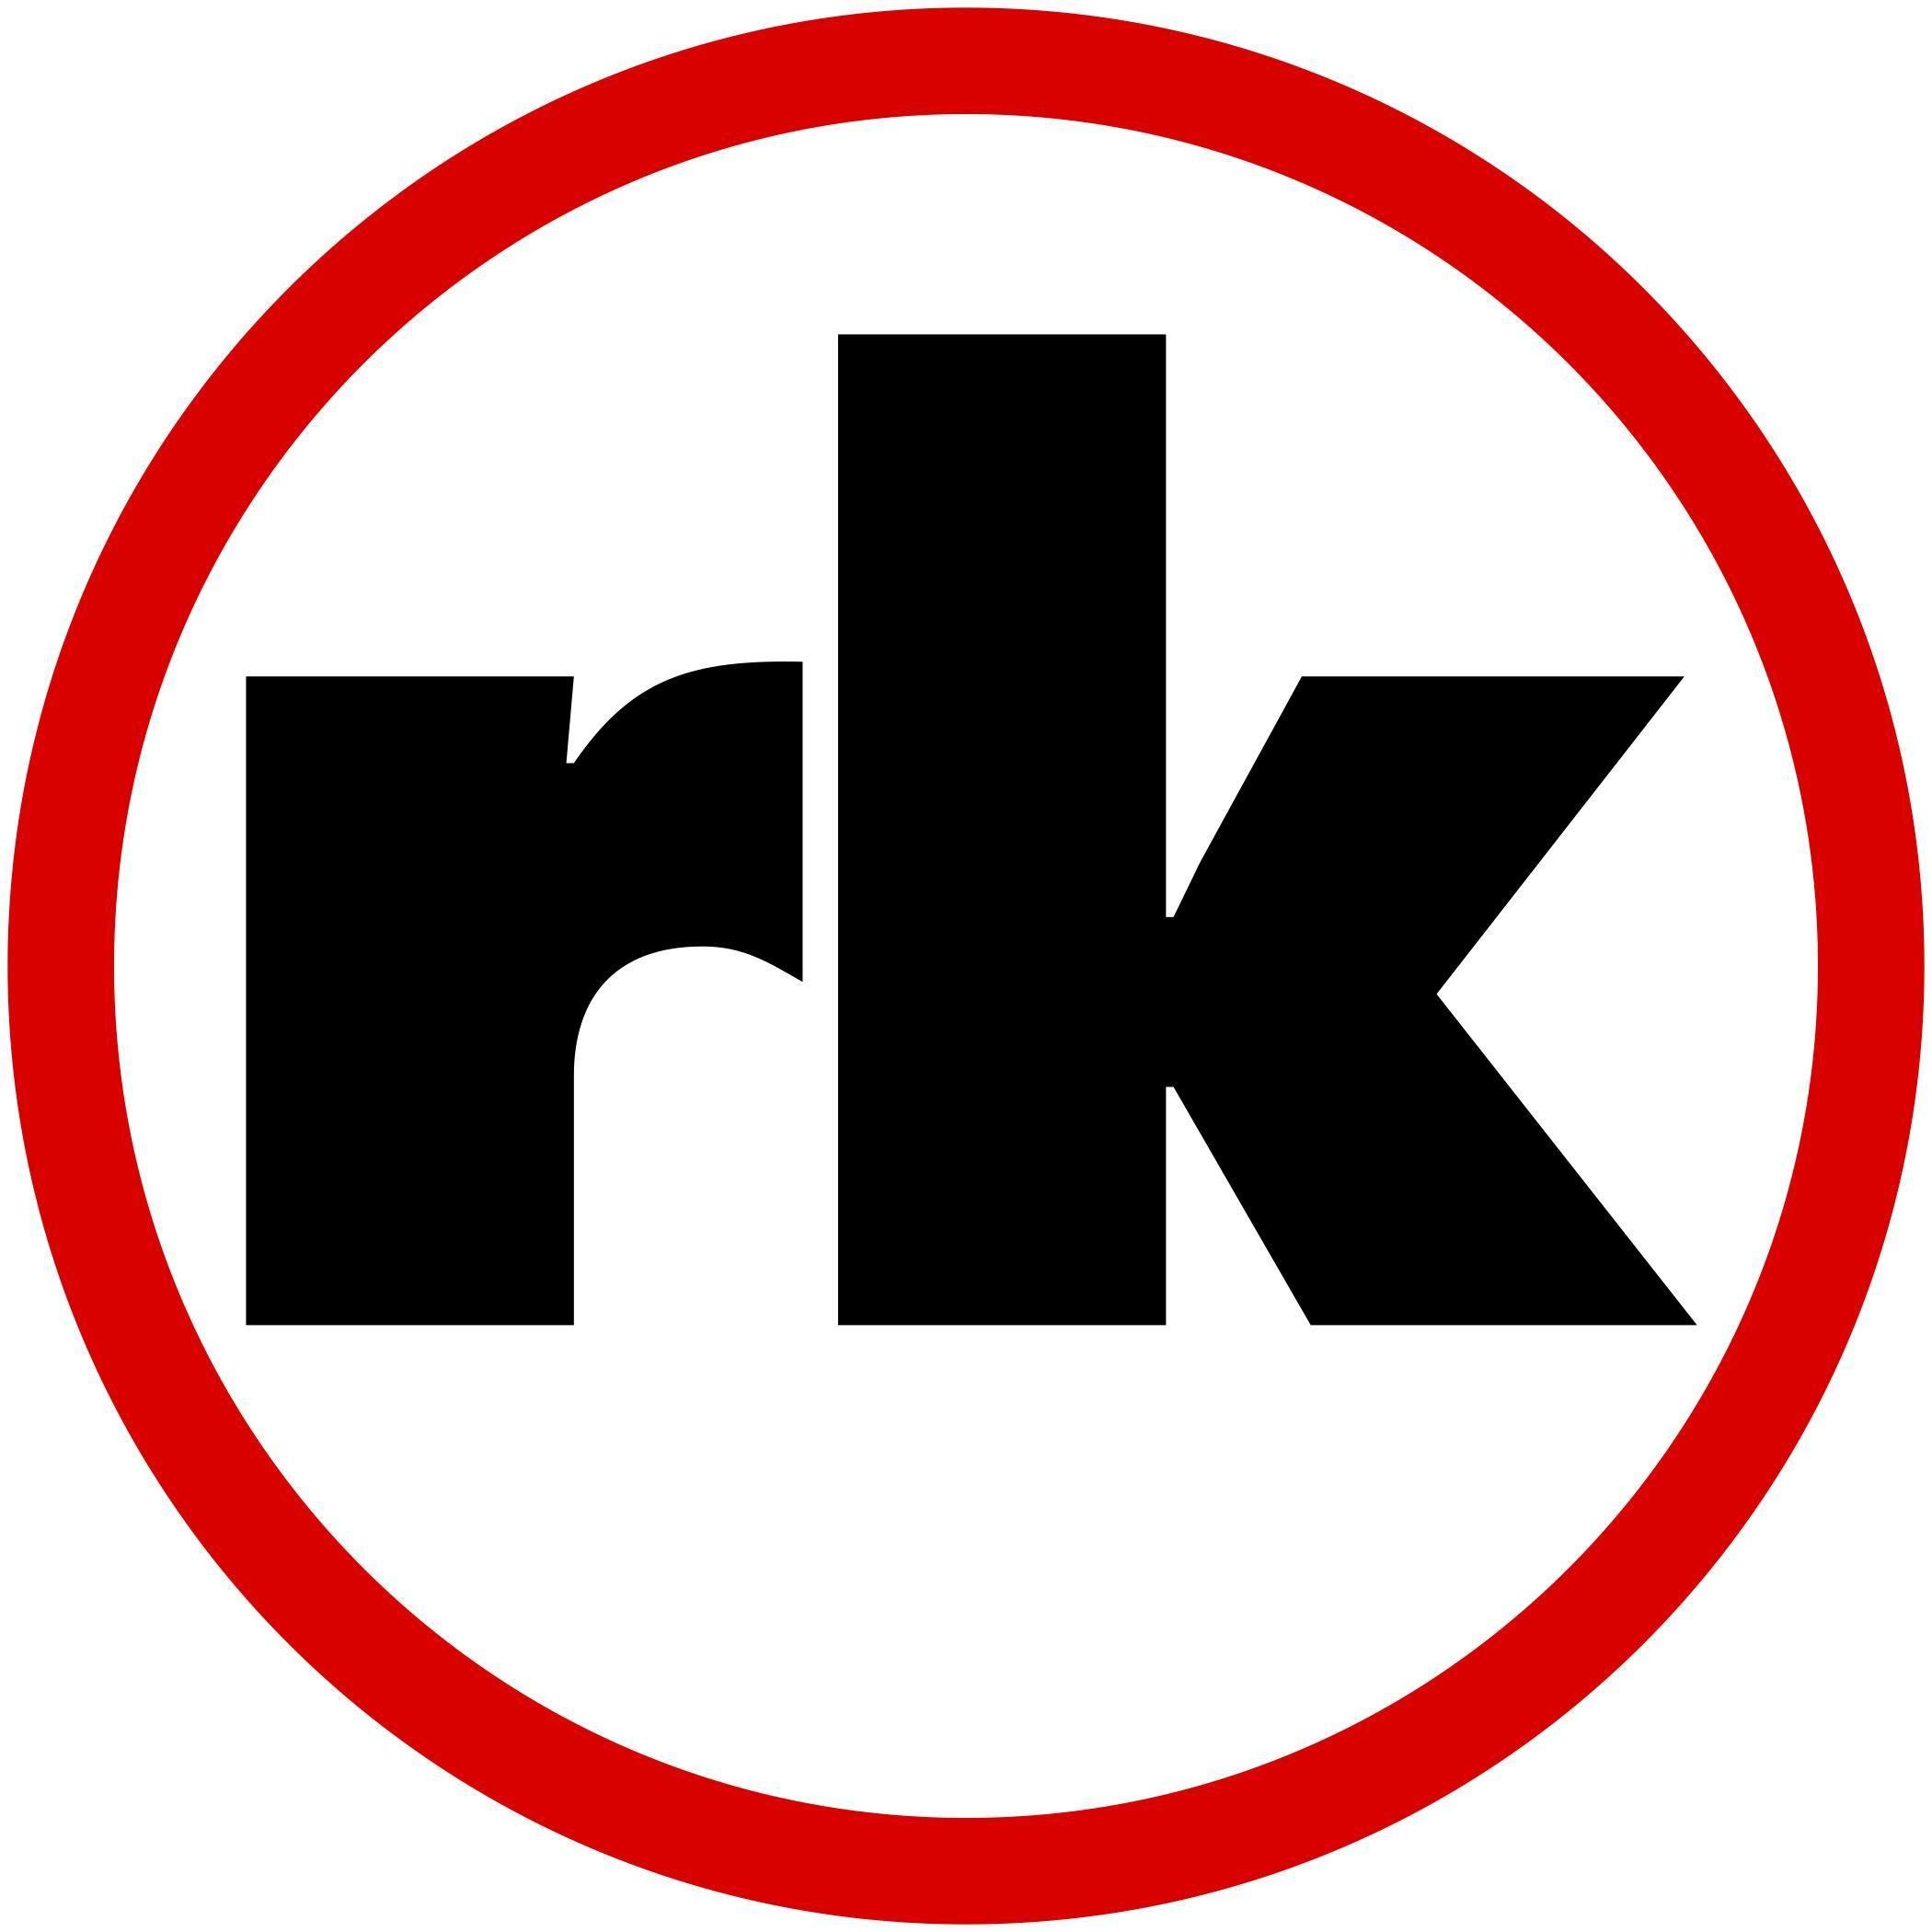 RK Logo - RK logo - Helen and Arthur E. Johnson Depression Center